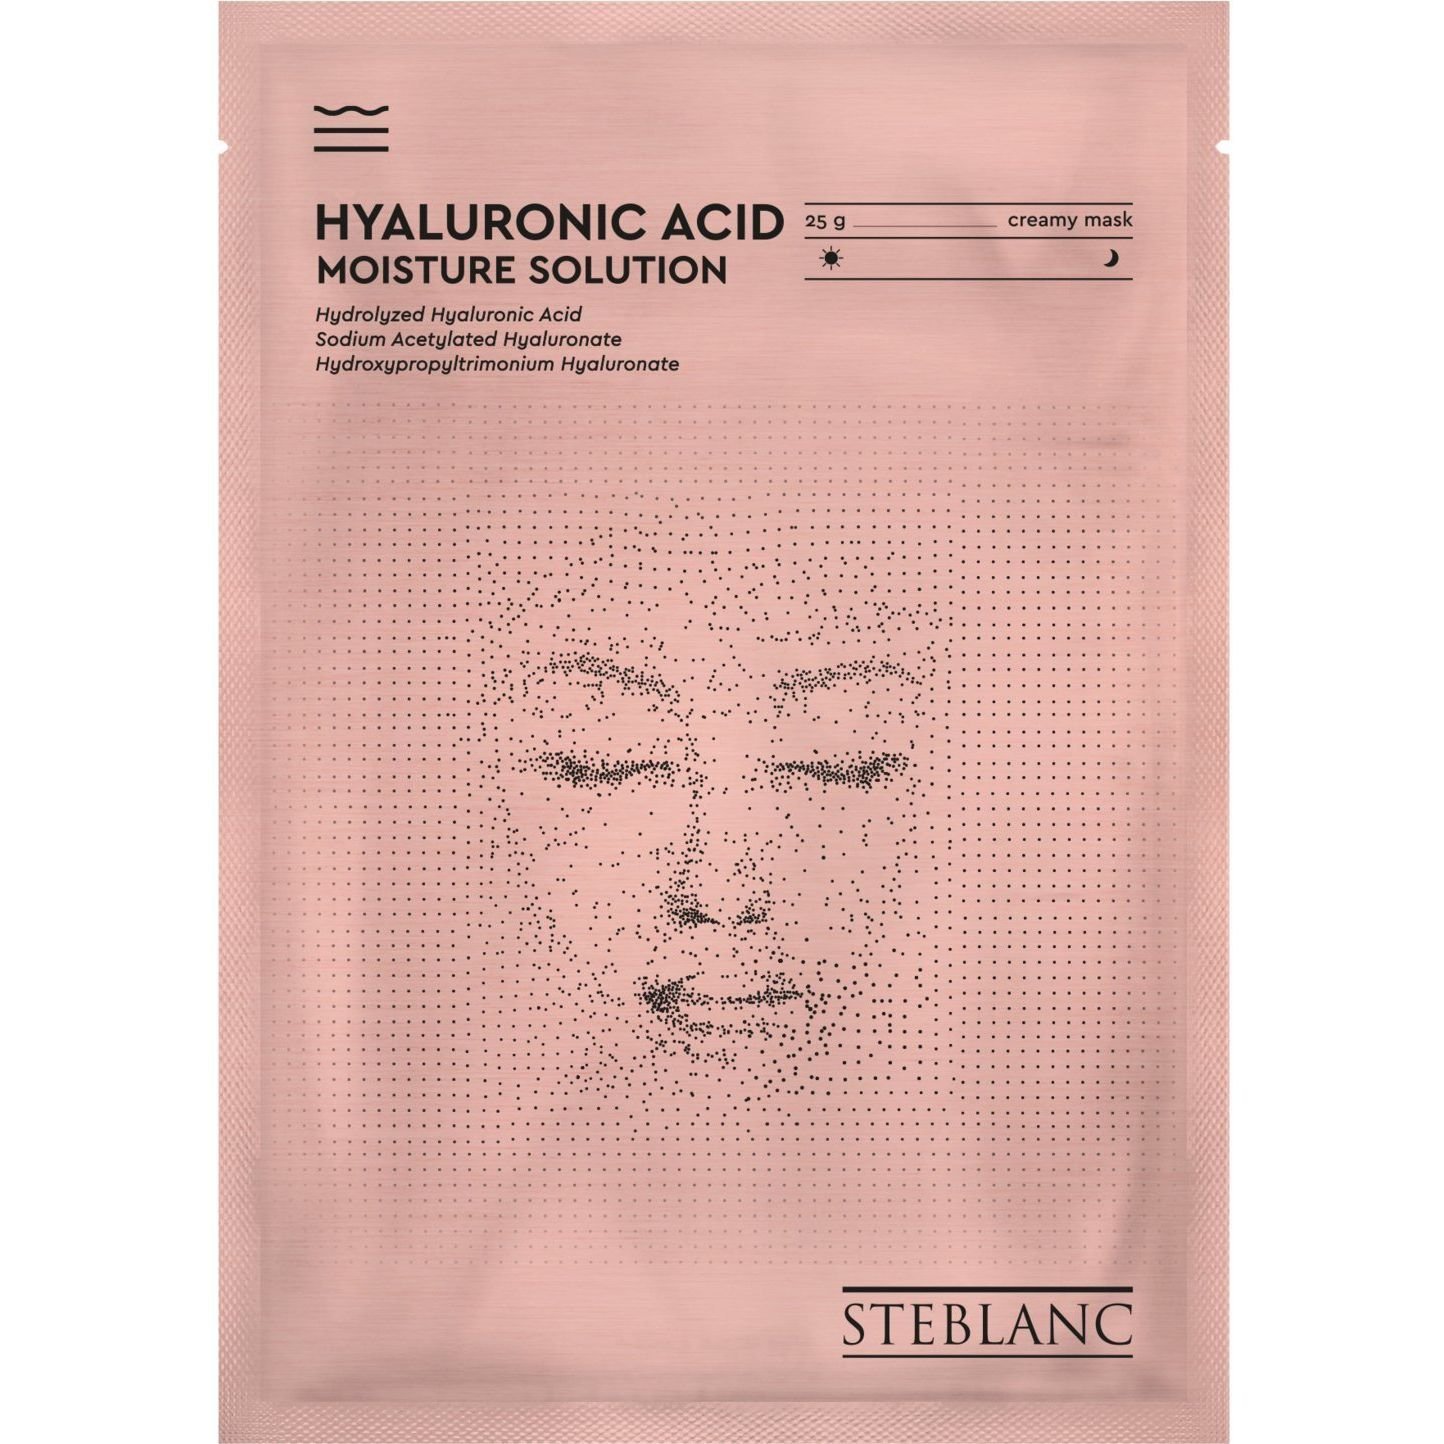 Тканевая крем-маска для лица Steblanc Hyaluronic Acid Moisture Solution Увлажняющая с гиалуроновой кислотой, 25 г - фото 1